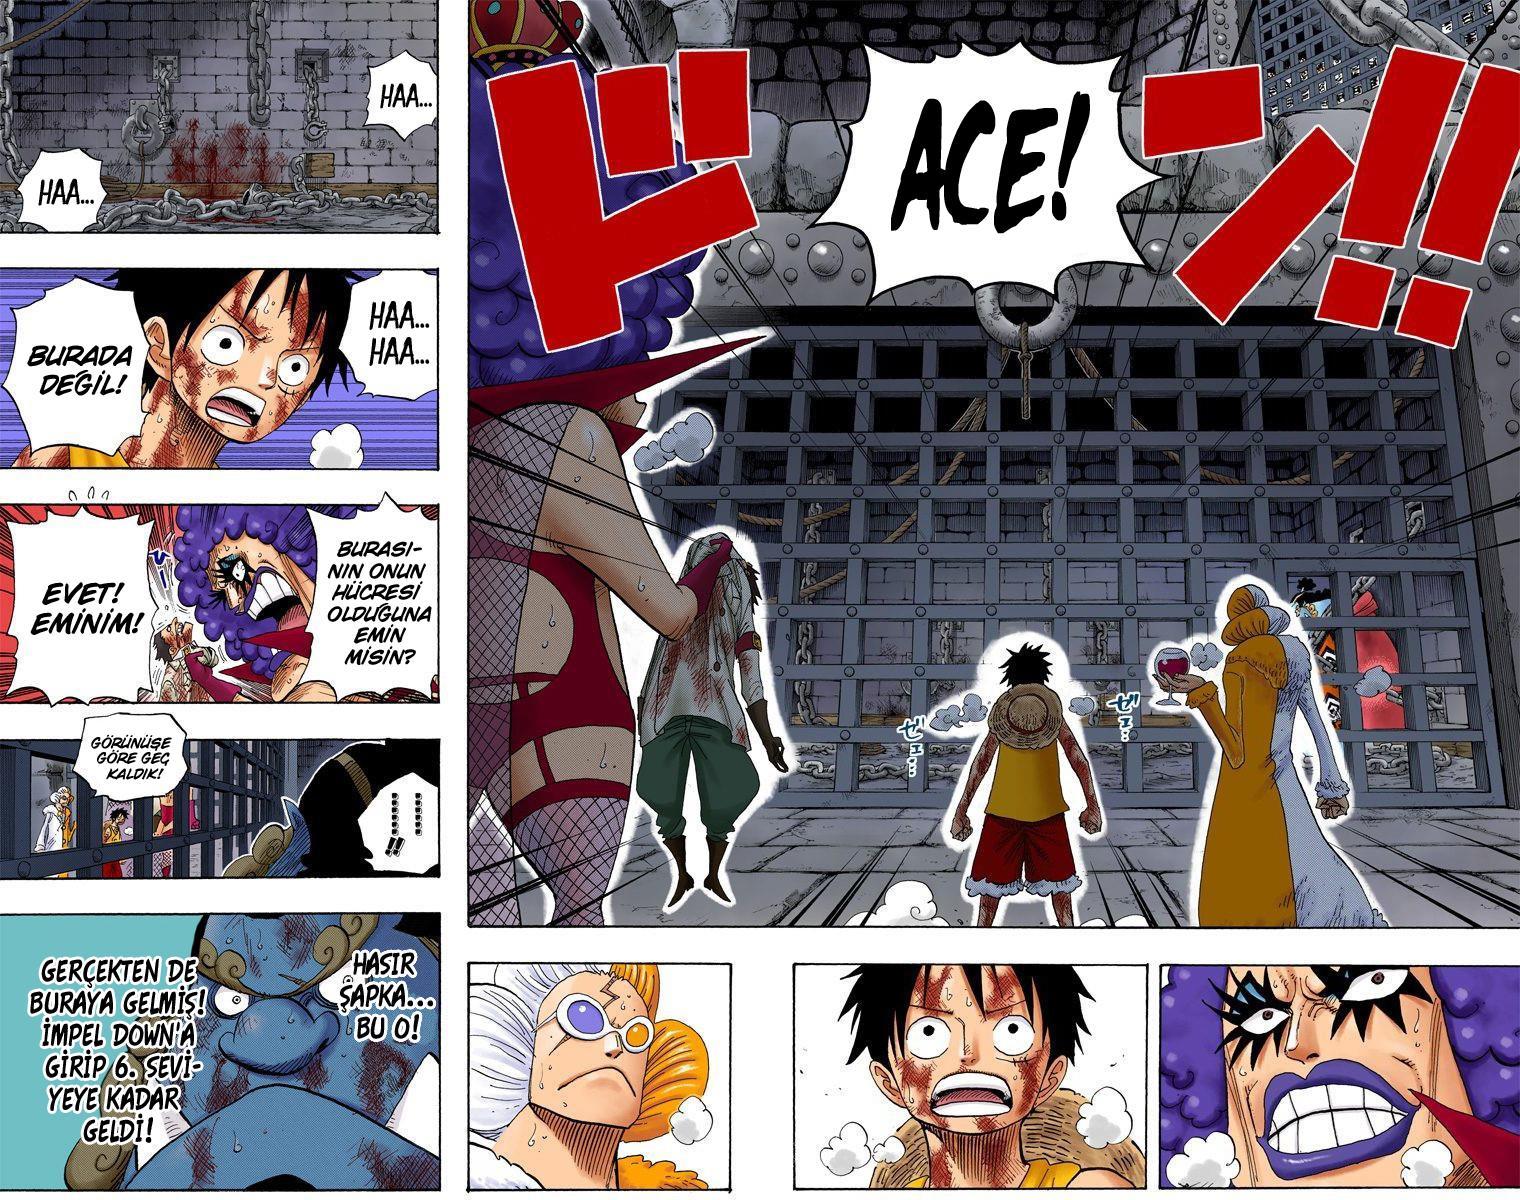 One Piece [Renkli] mangasının 0540 bölümünün 4. sayfasını okuyorsunuz.